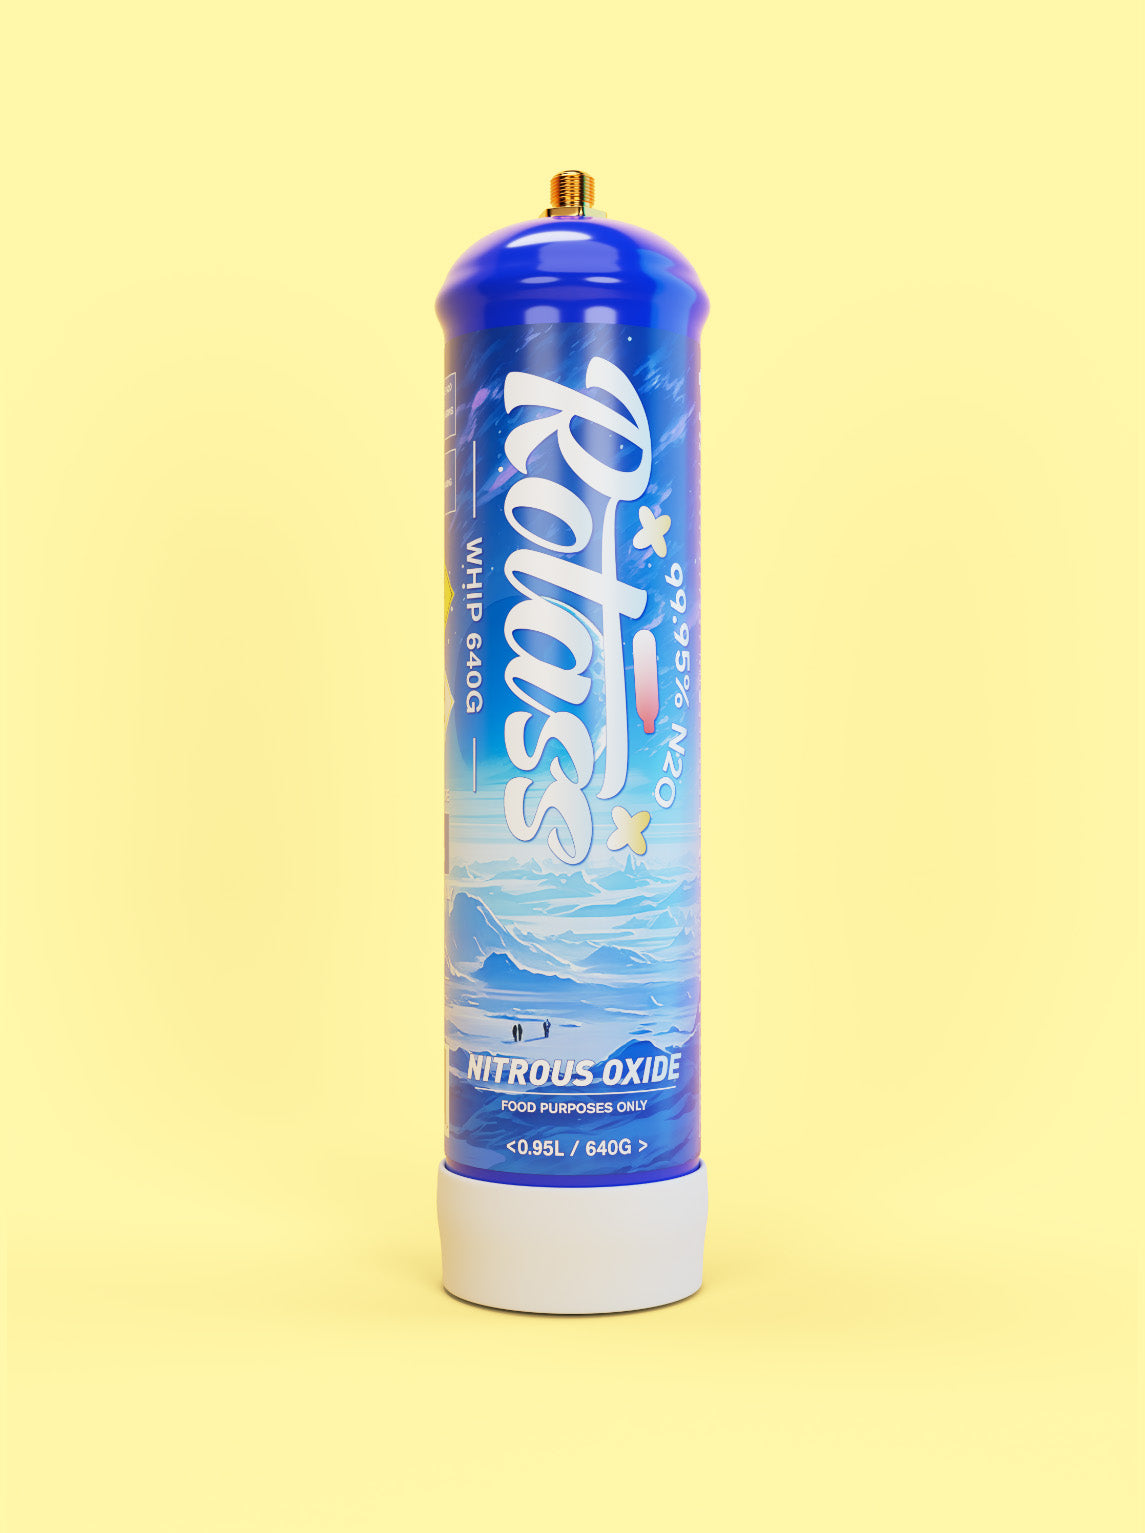 Frontalansicht: Die Gasflasche ist im Antarktis-Style designed, mit dem weißen Logo "Rotass" 640g. Der Hintergrund ist hellgelb.